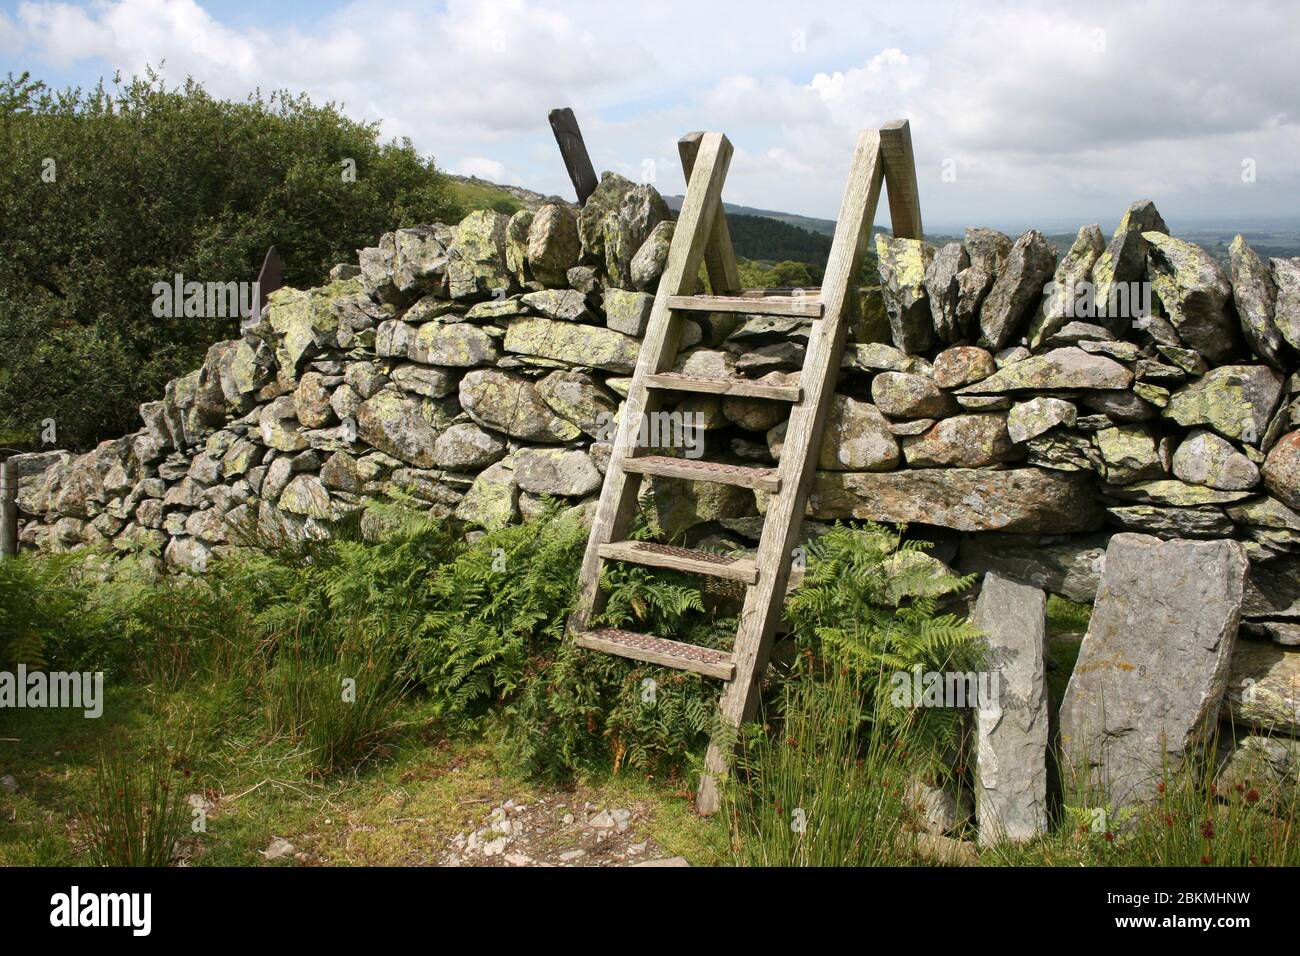 Escalera de madera cruce de azulejos muro de piedra, Valle de Llapar, Snowdonia, Gales Foto de stock